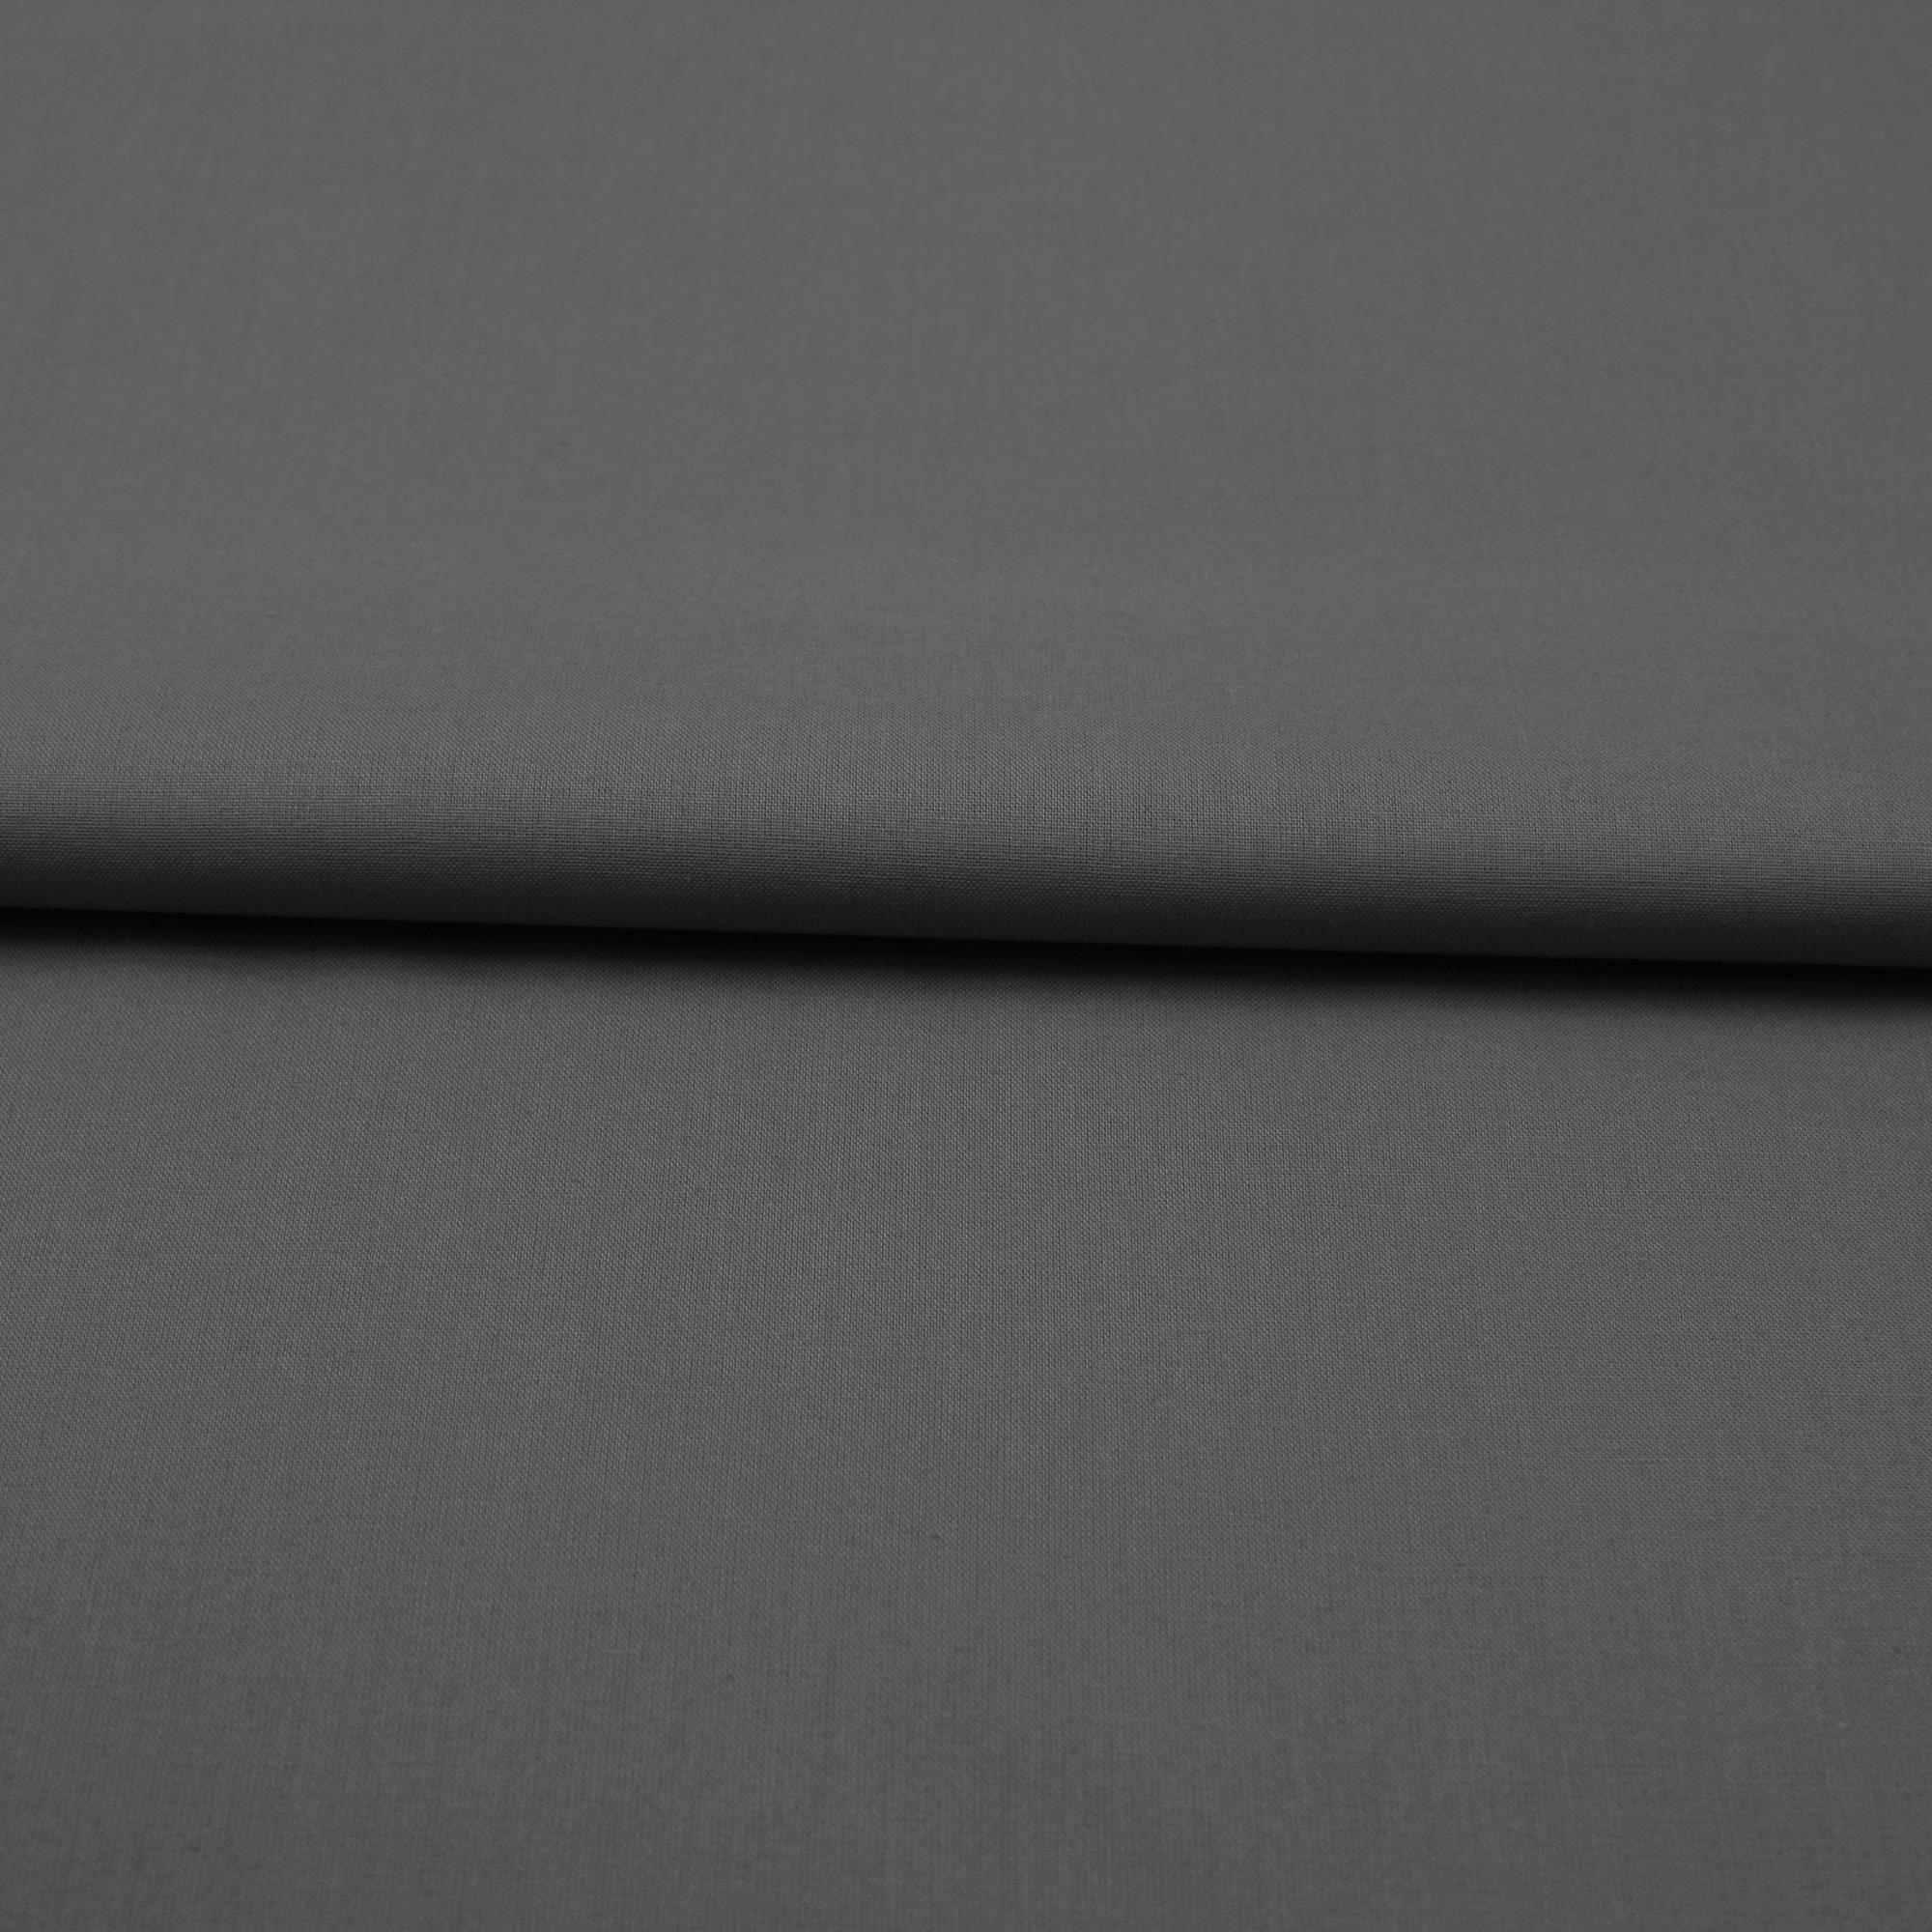 Stoff Meterware Baumwolle Linon Grau